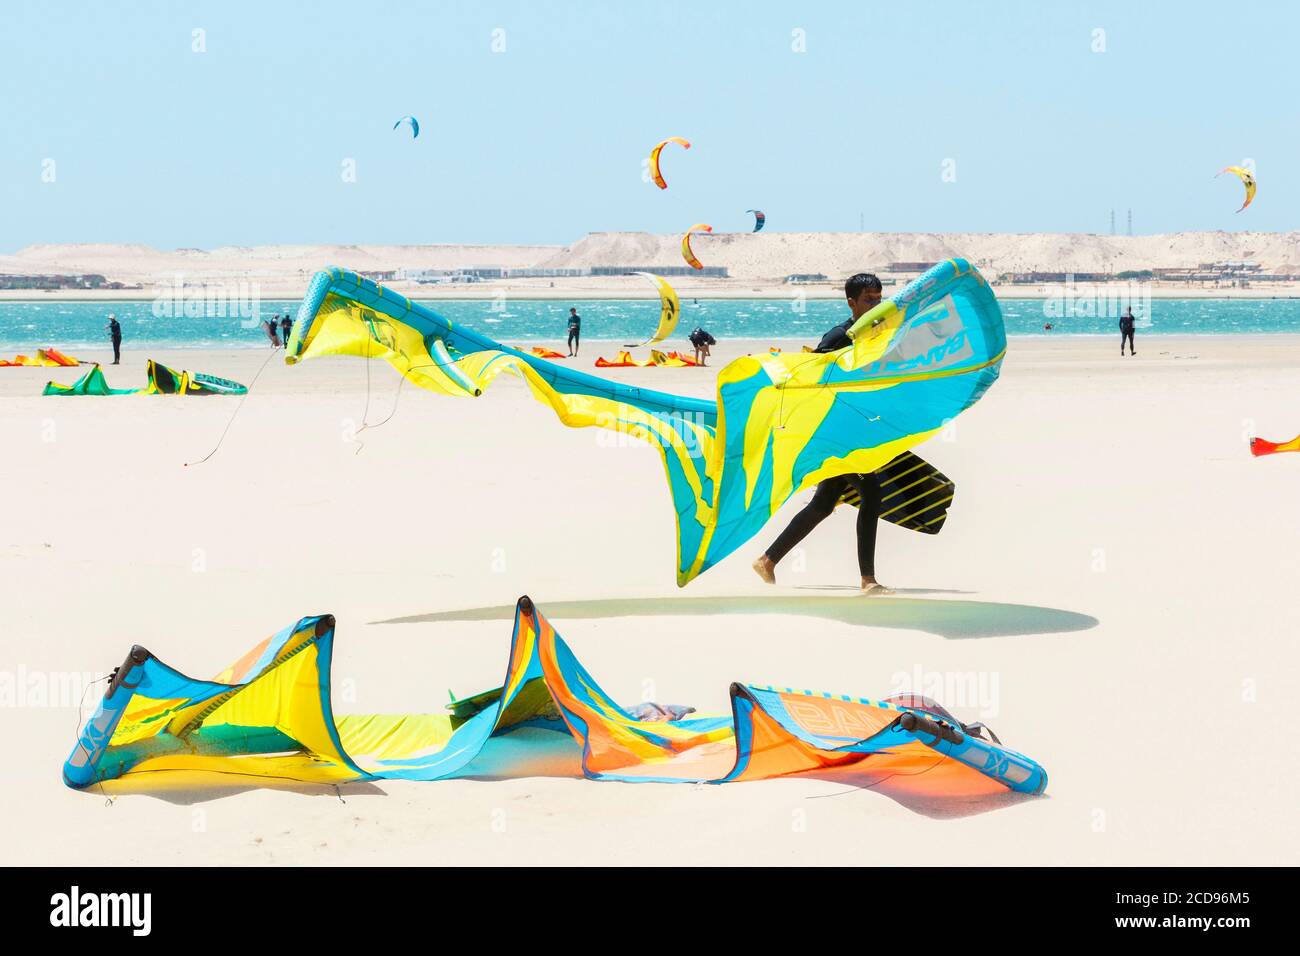 Marocco, Oued ed-Dahab, Dakhla, vista di un luogo nautico di kite-surf in un deserto Foto Stock